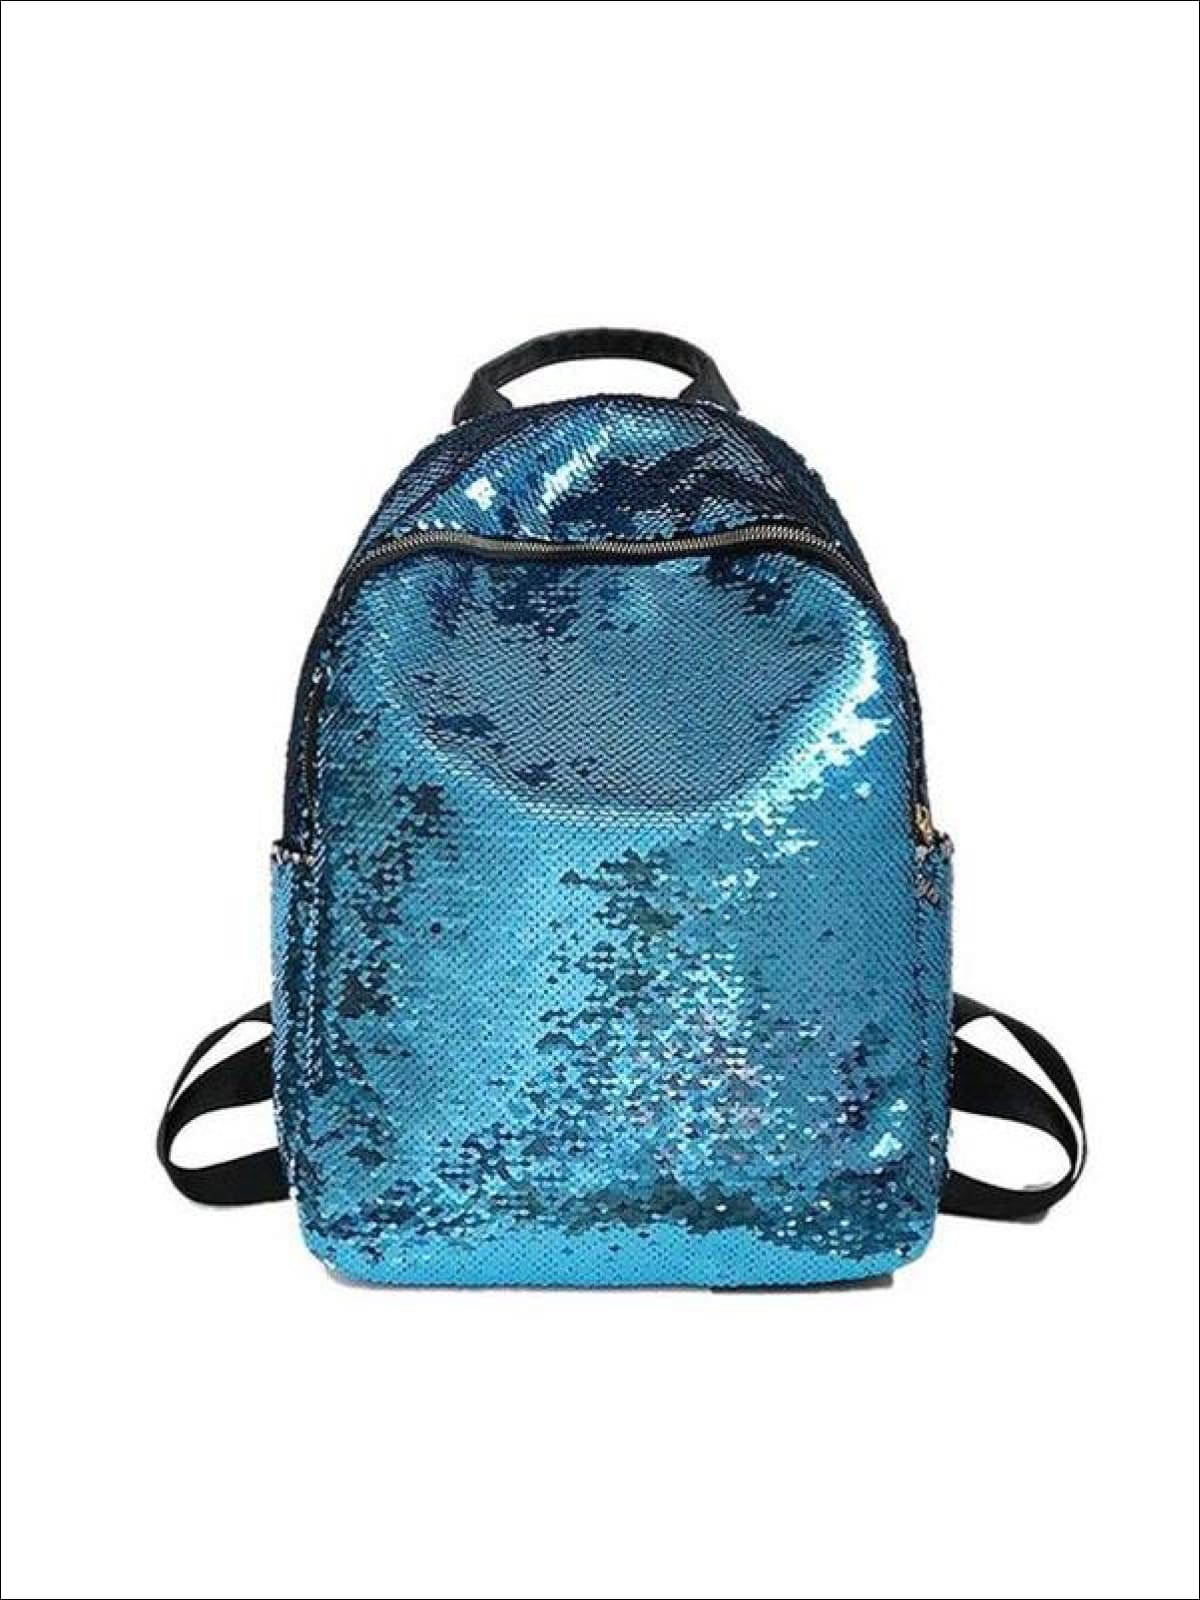 Girls 16 Iridescent Sequined Backpack - Blue - Girls Backpacks